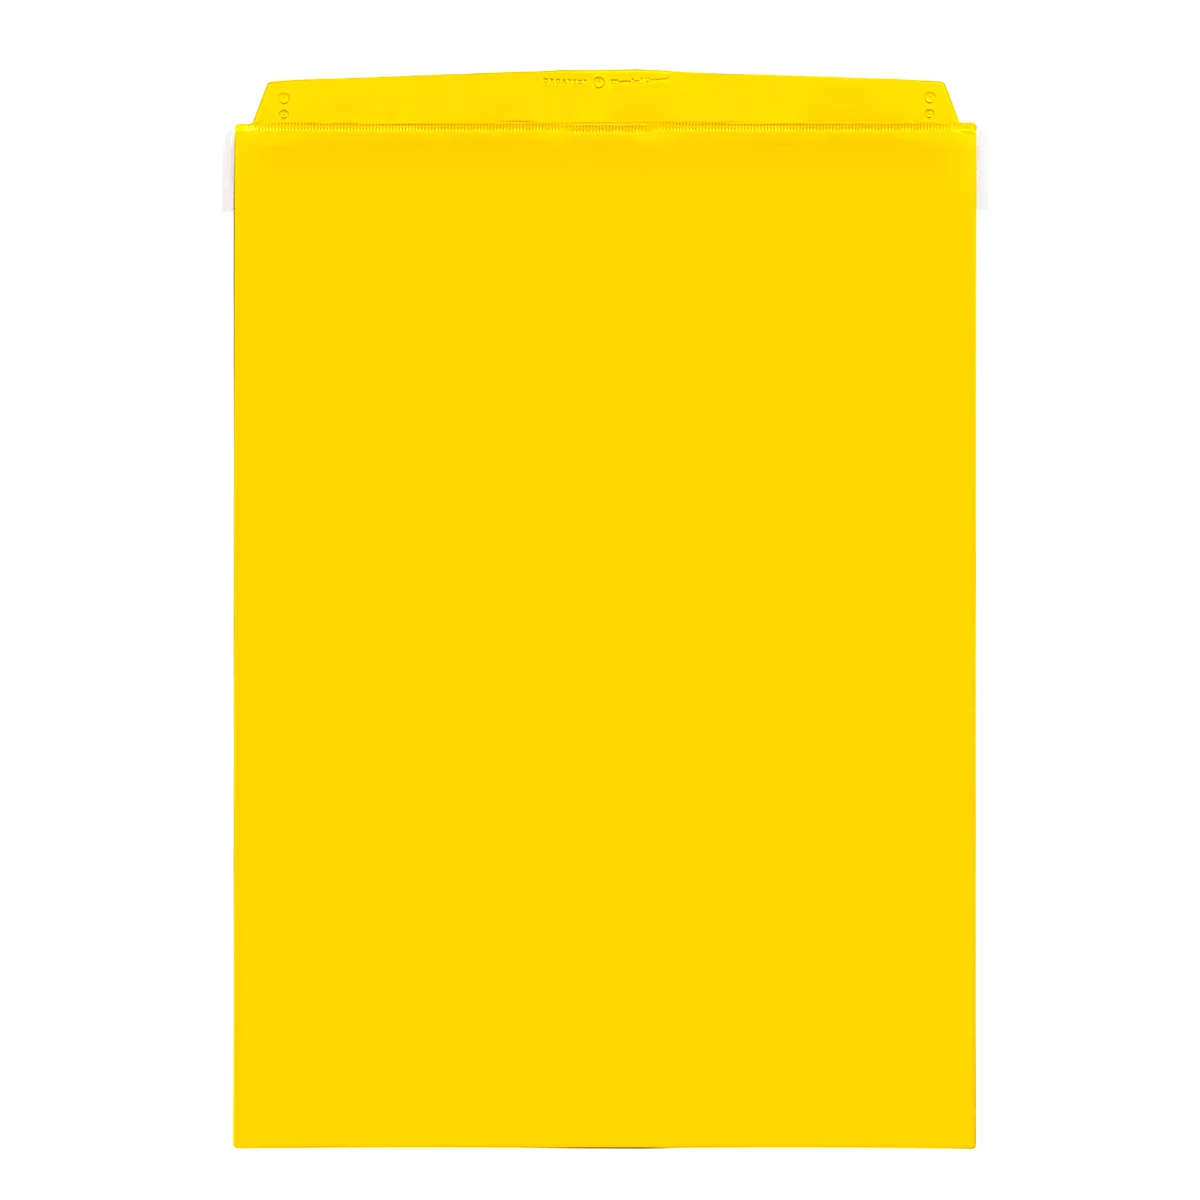 Fundas transparentes Orgatex, c. puerta, A4 vertical, amarillo, 10 uds.